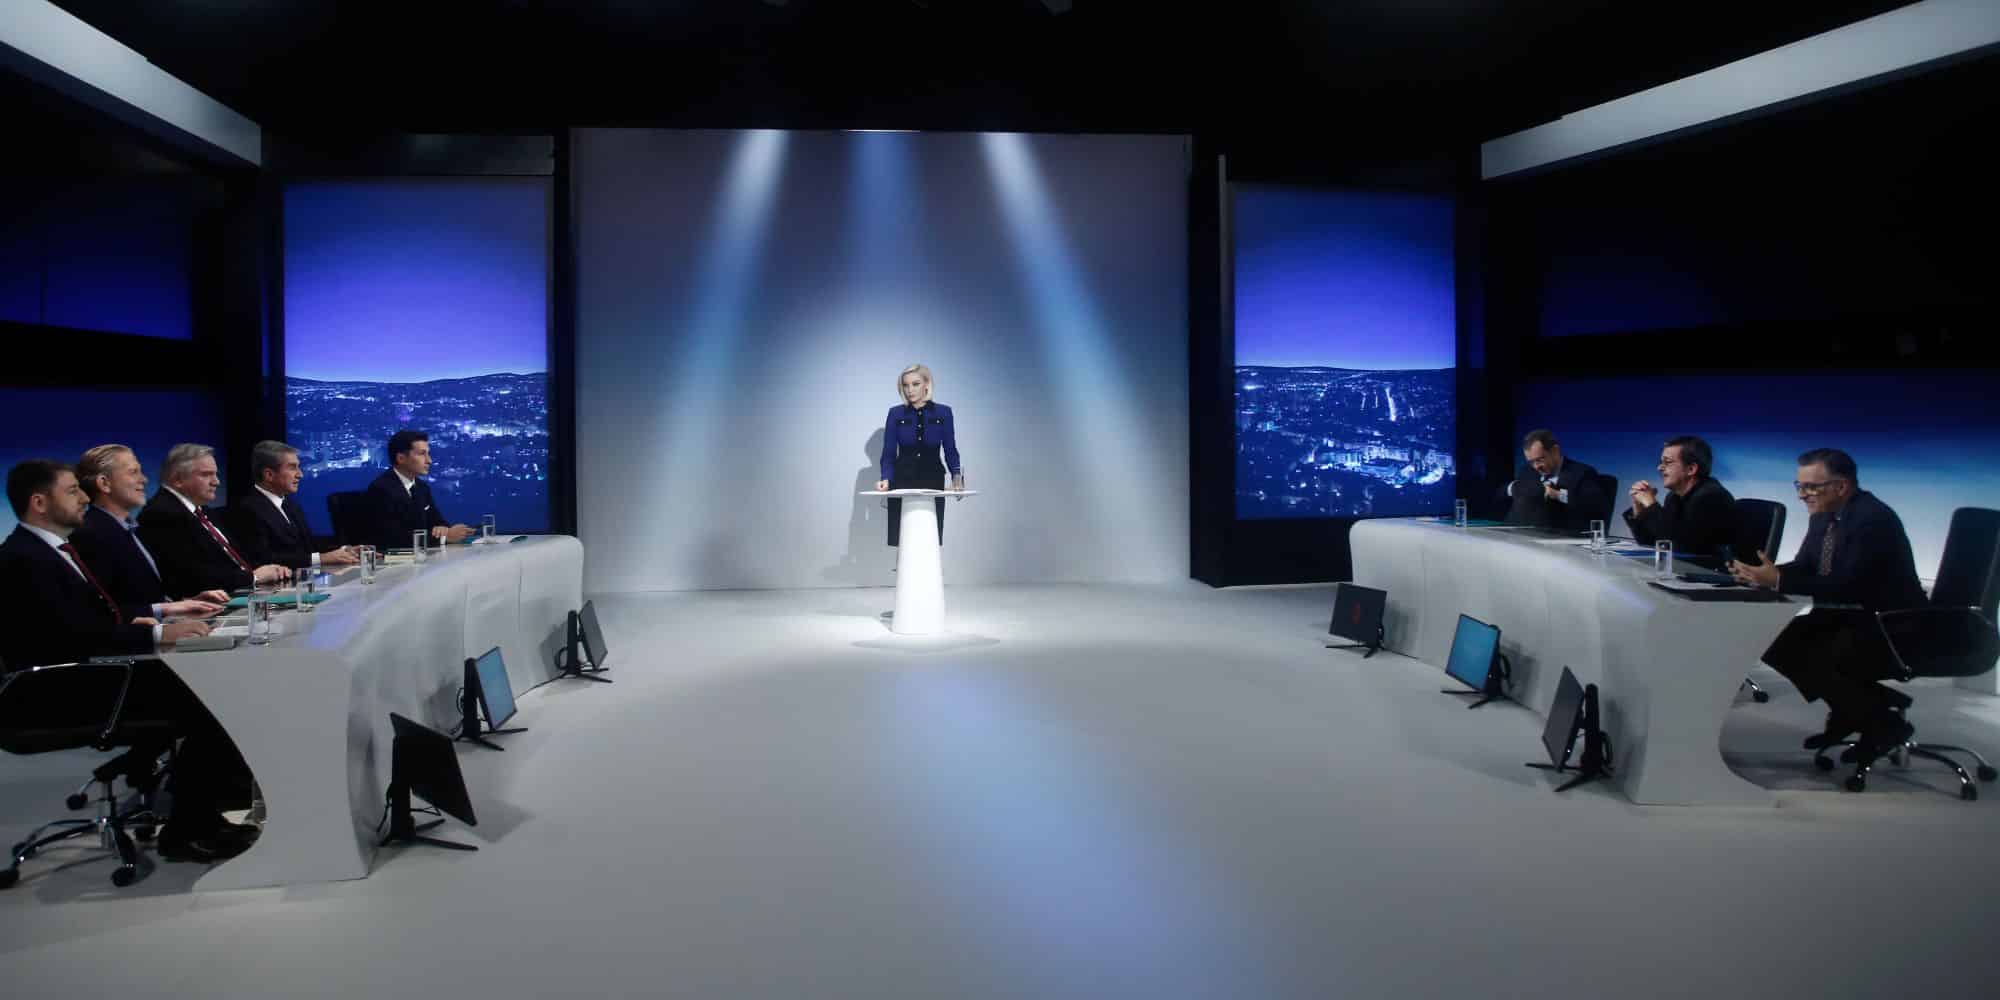 Ντιμπέιτ μεταξύ των πέντε υποψηφίων για την προεδρία του ΚΙΝΑΛ